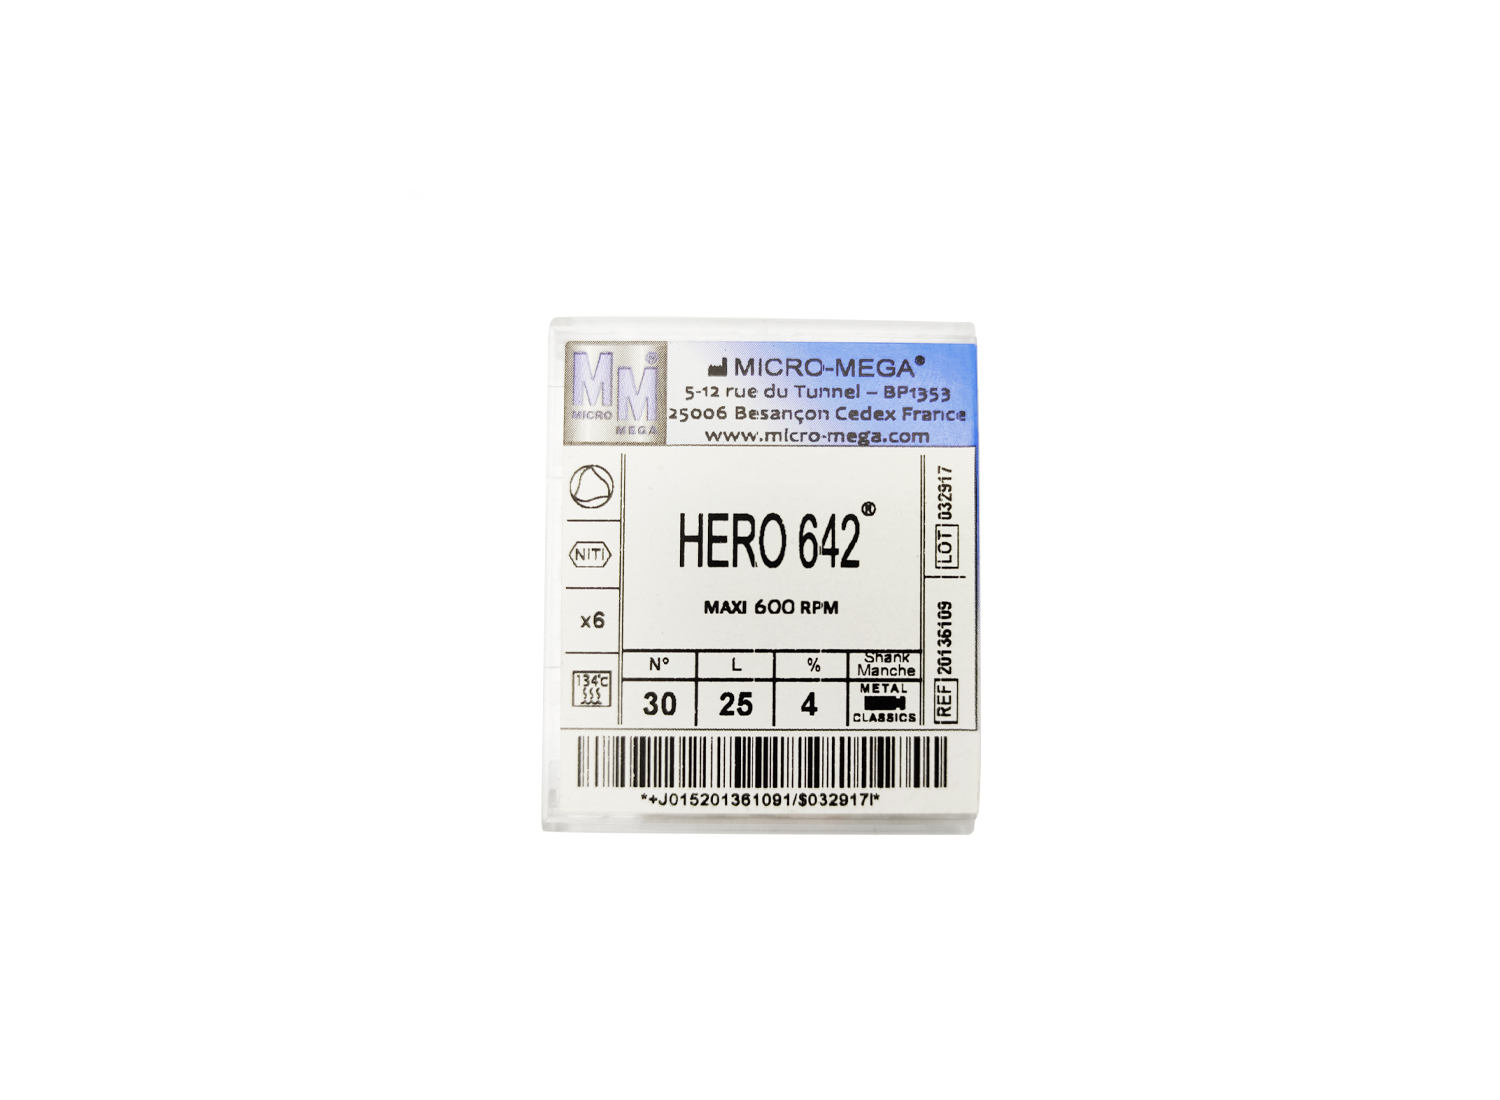 فایل روتاری HERO 642  برند MICRO MEGA